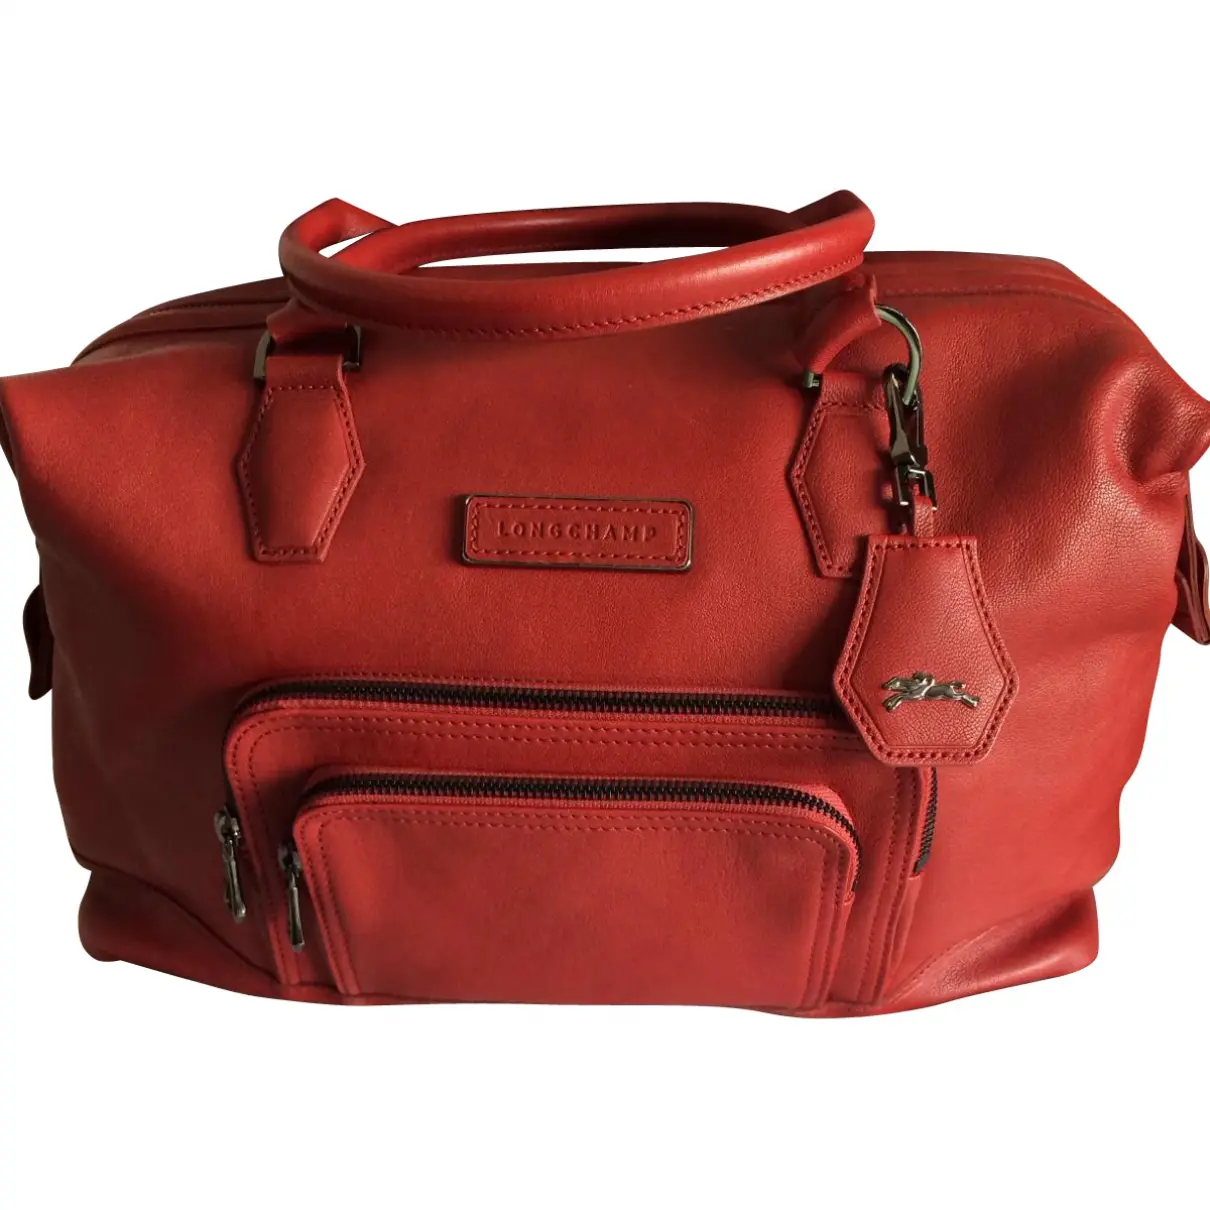 Red Leather Handbag Légende Longchamp